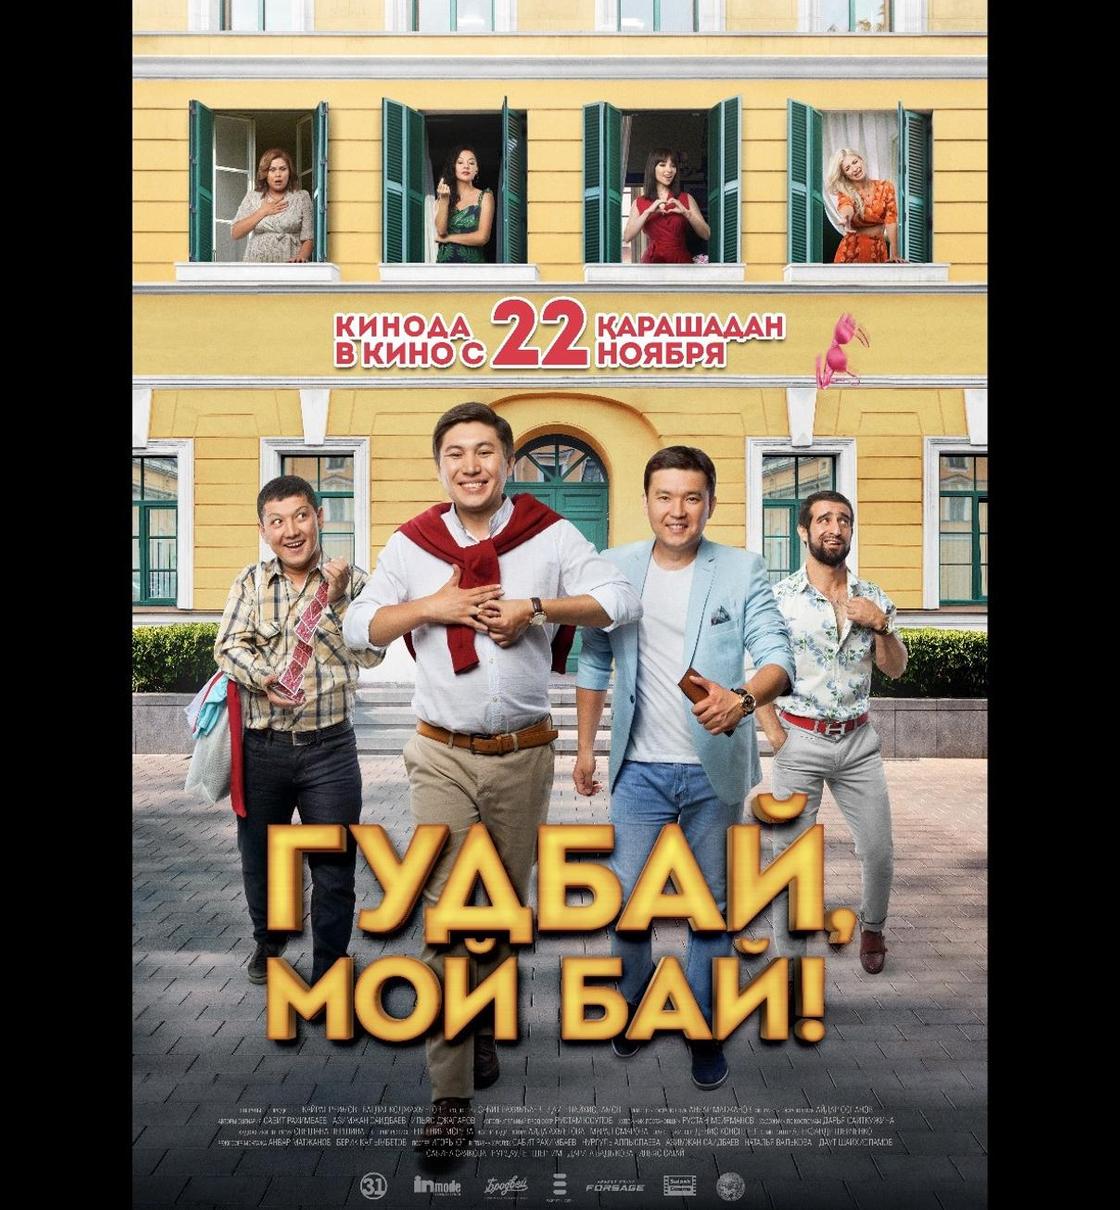 Казахстанская комедия о «прелестях» развода выйдет в ноябре